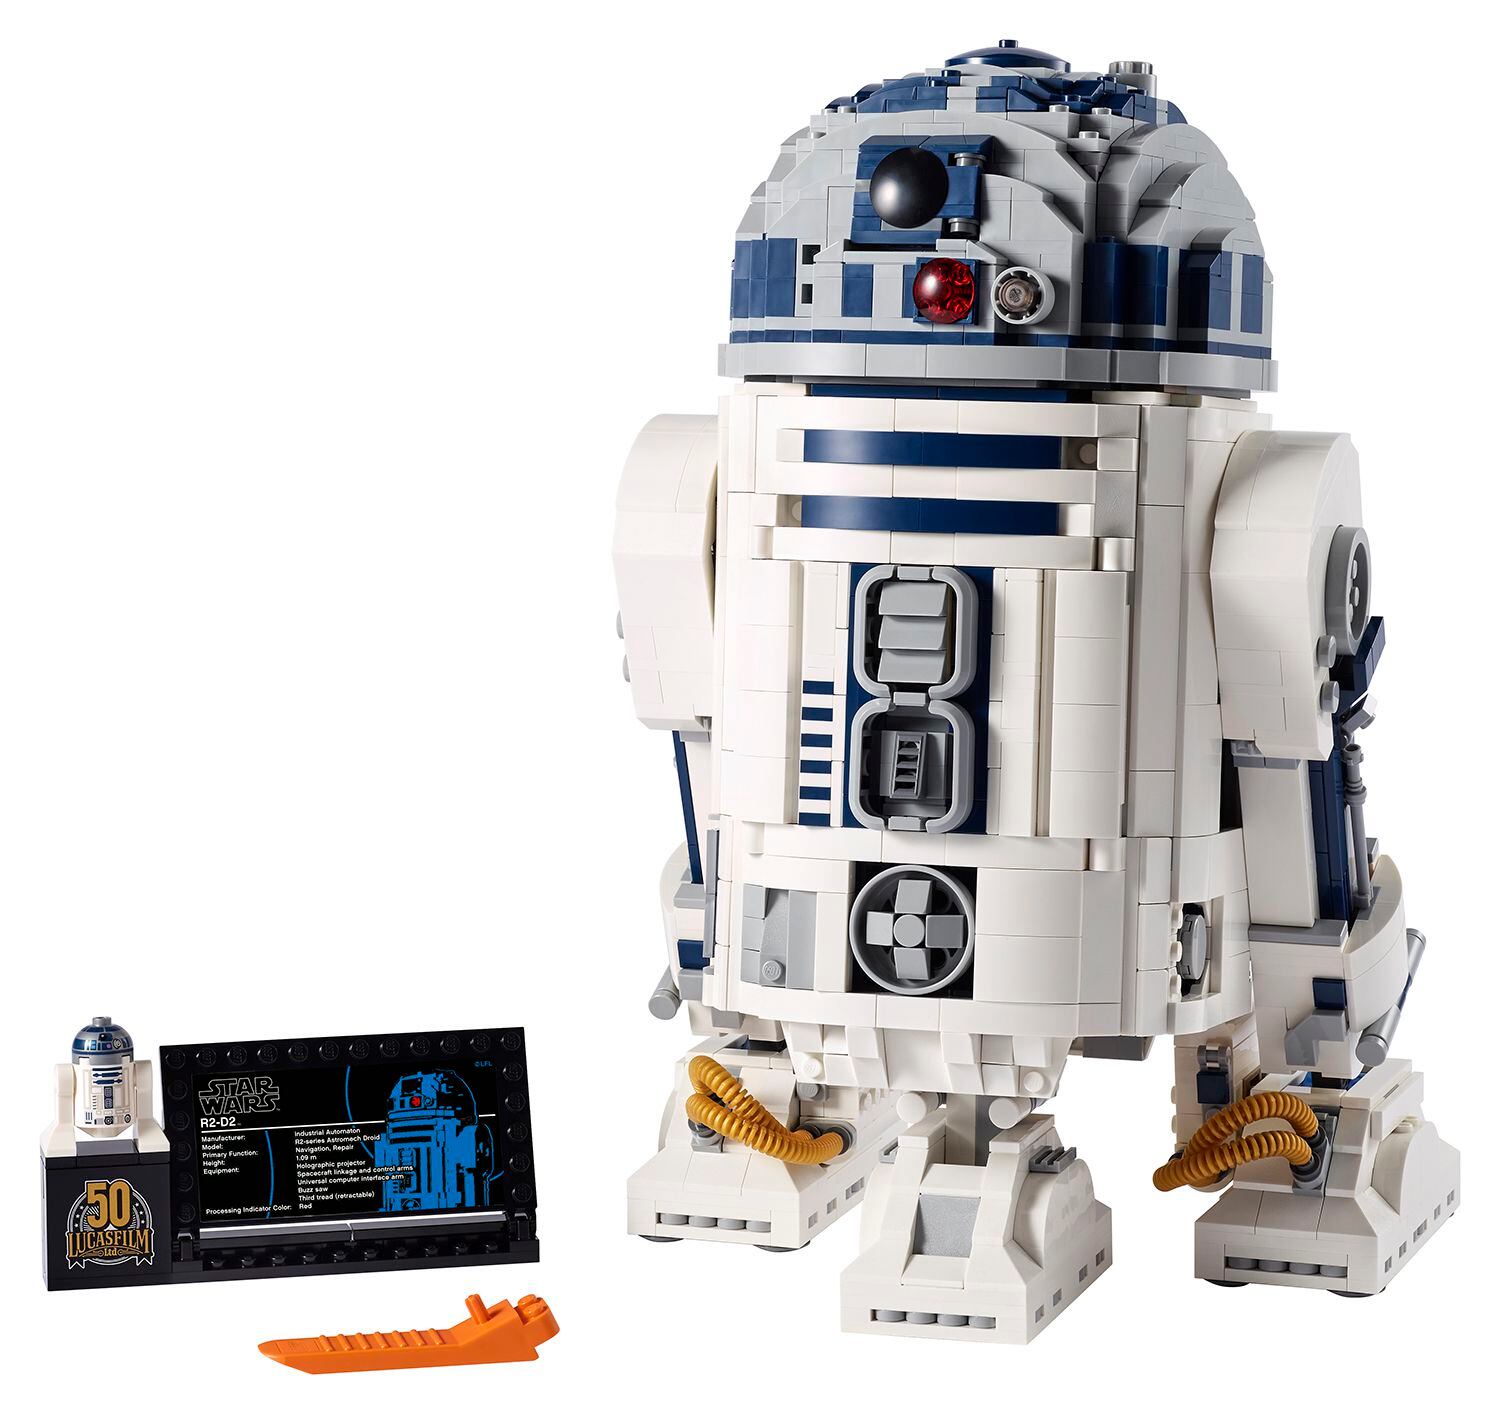 The Lego R2-D2 kit